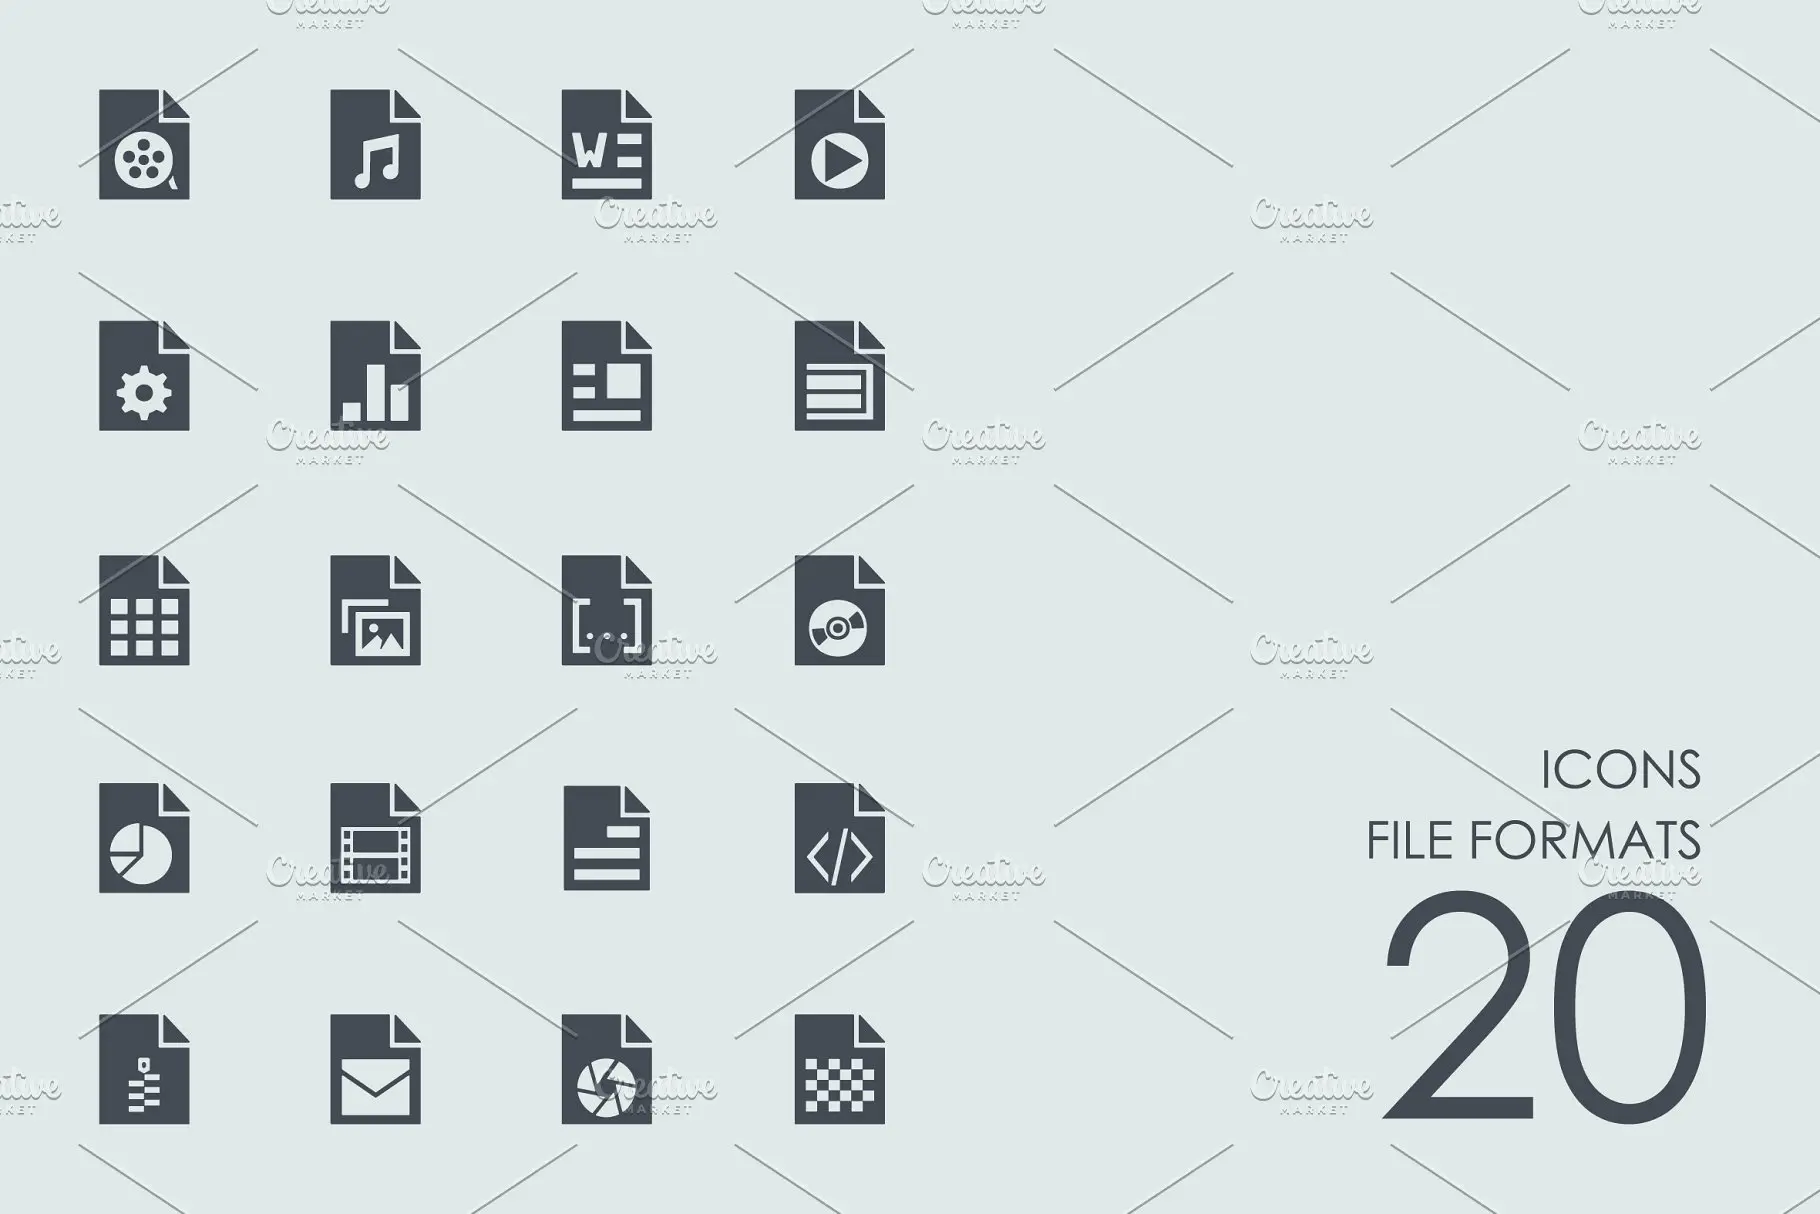 文件格式图标素材 File formats icons插图